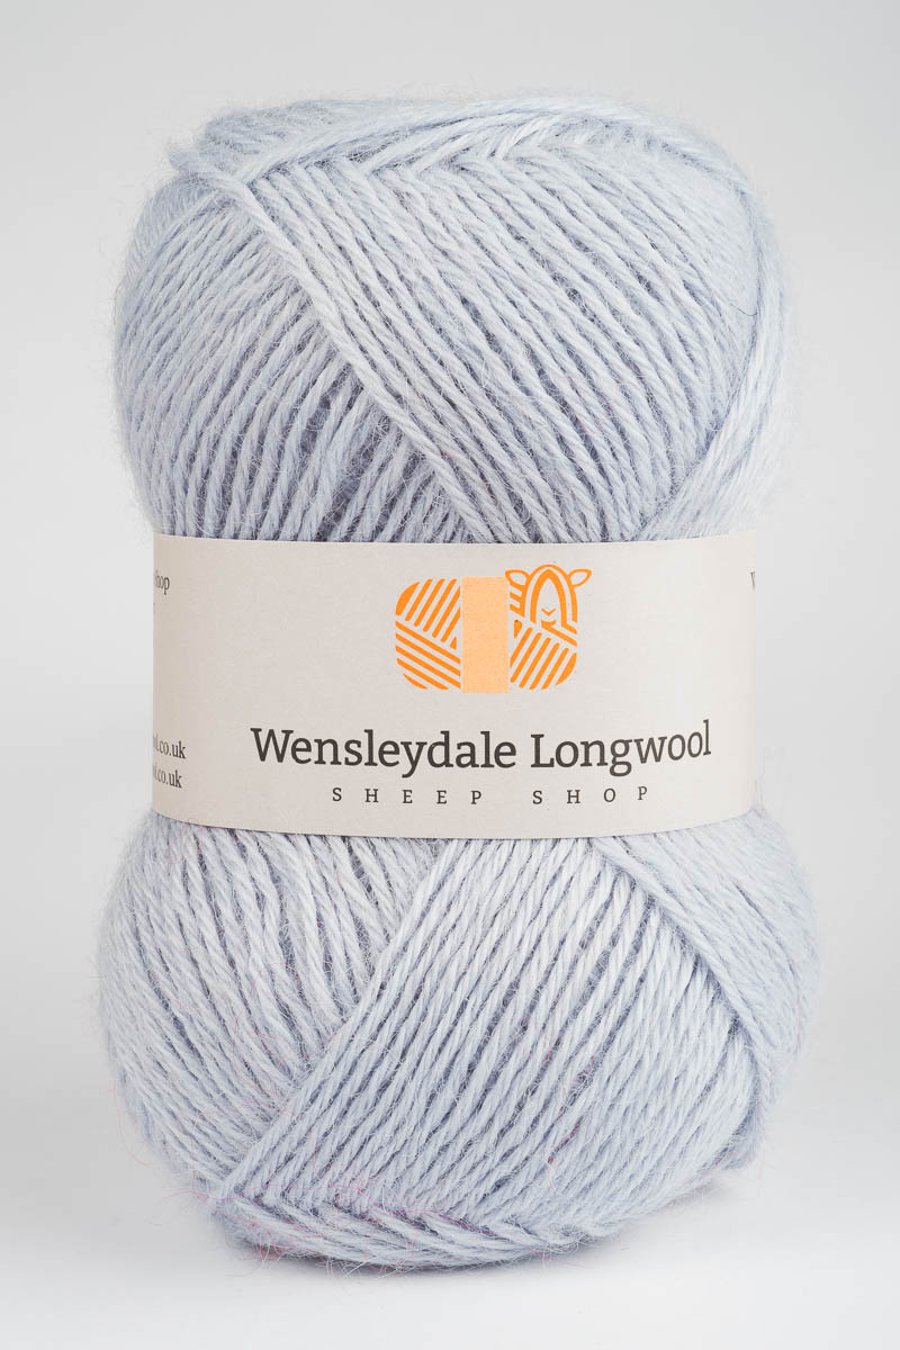 Wensleydale Longwool Double Knit Yarn - Mizzle Grey